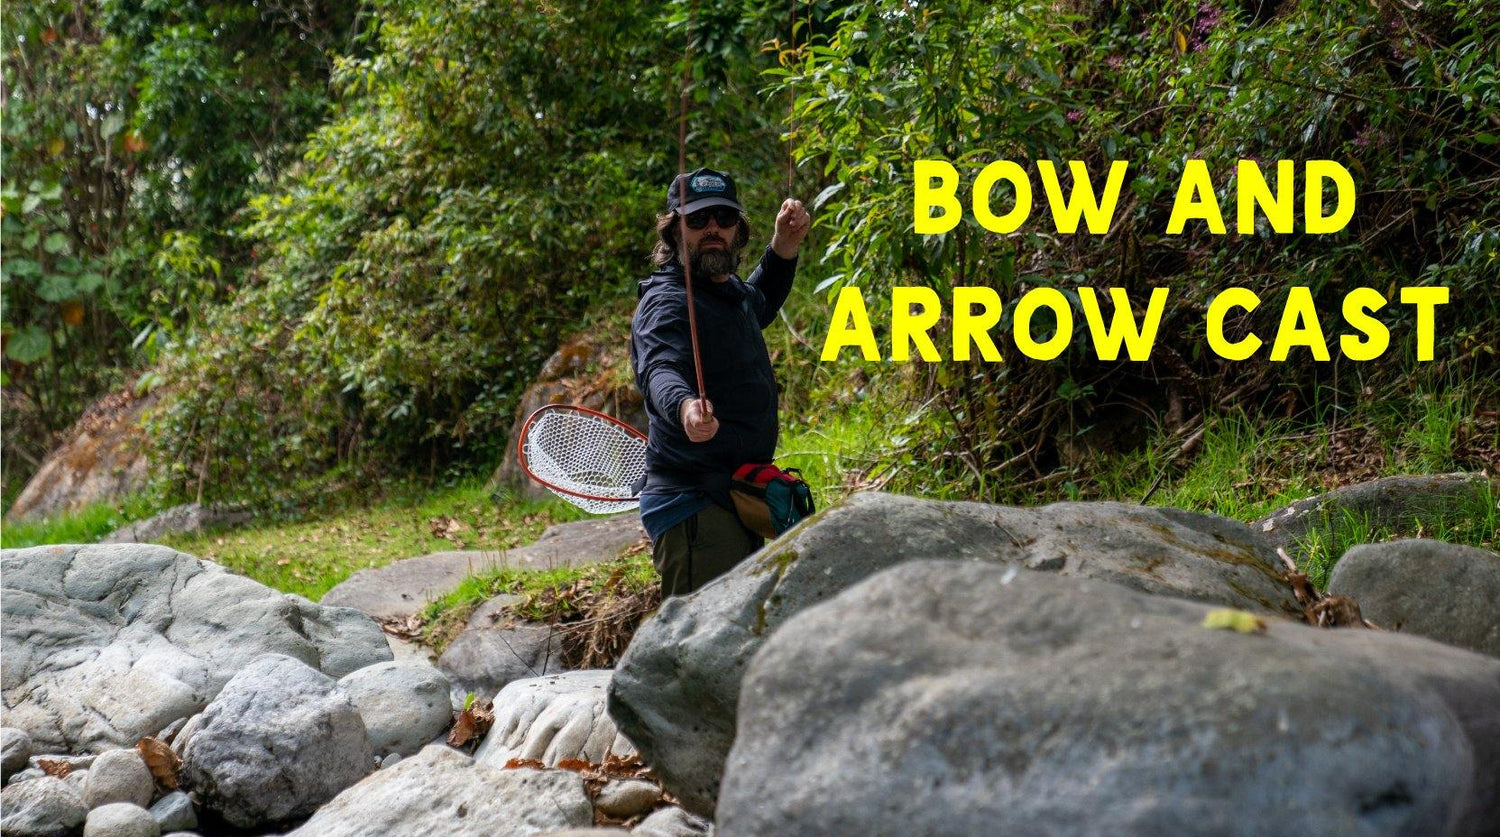 The Bow and Arrow Cast - Tenkara Rod Co.